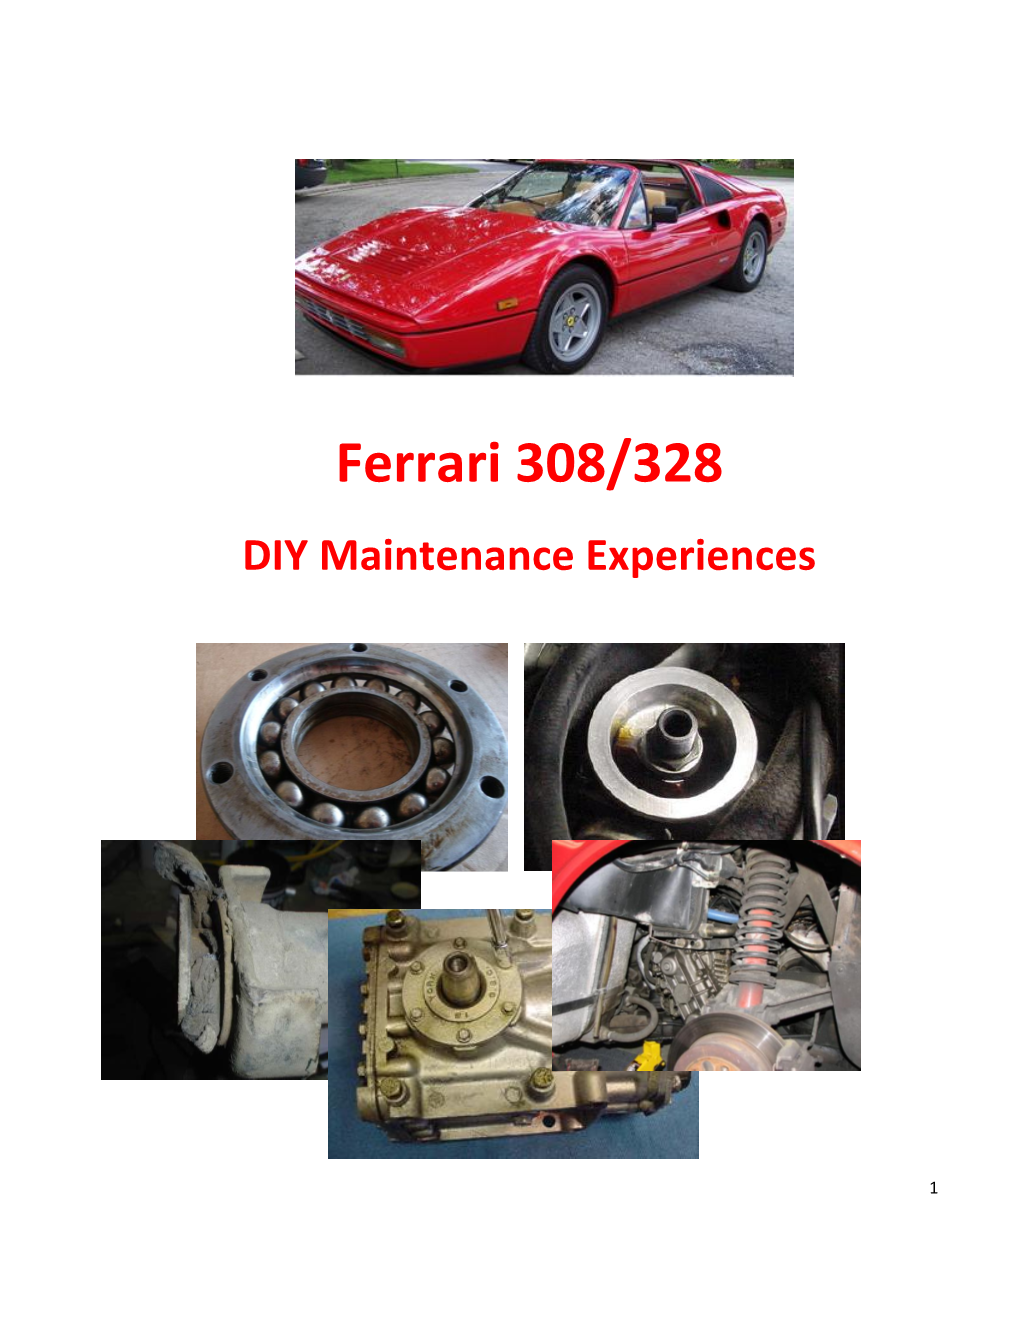 Ferrari 308/328 DIY Maintenance Experiences